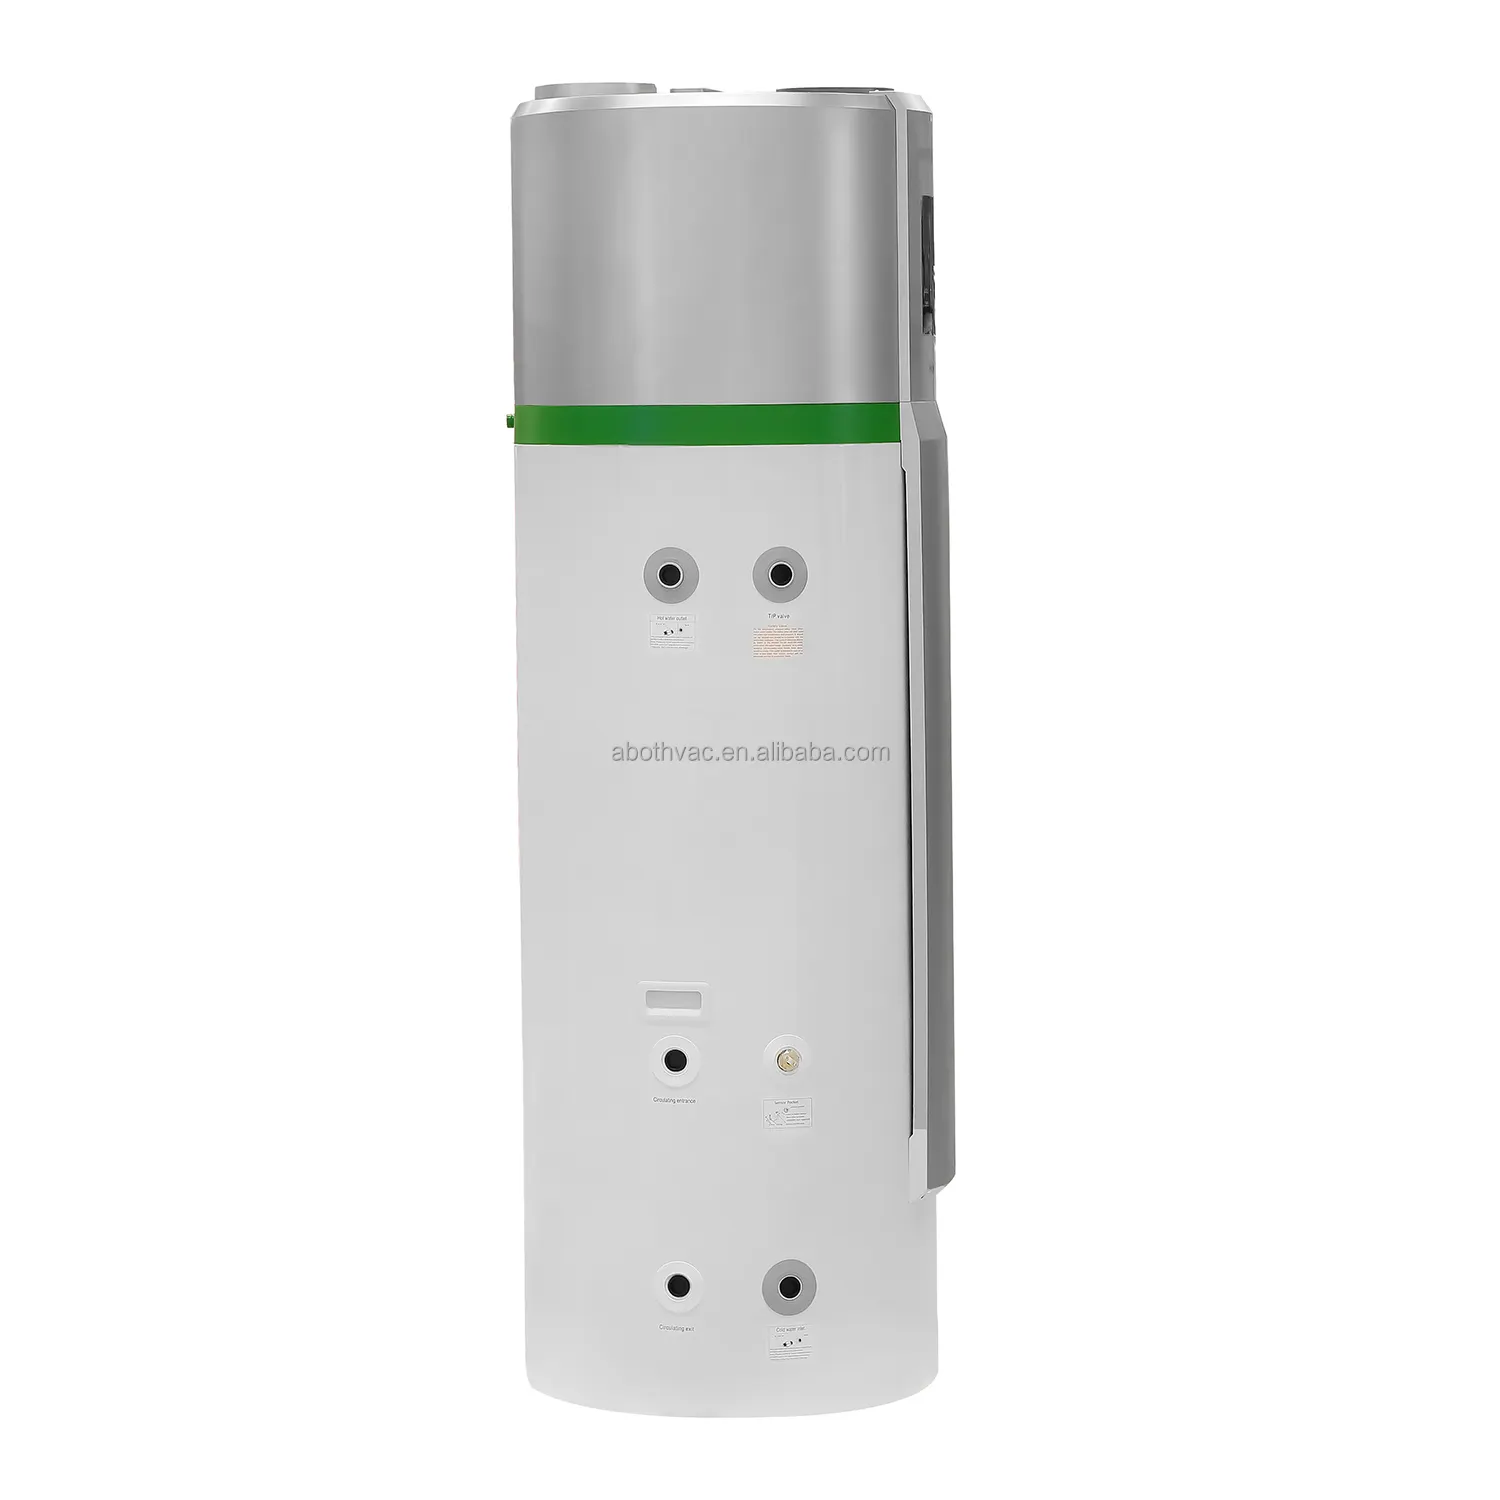 Chauffe-eau à pompe à chaleur Haier R290 Dc Inverter 8kw-16kw A +++ Source d'air Climatiseurs domestiques eau à air